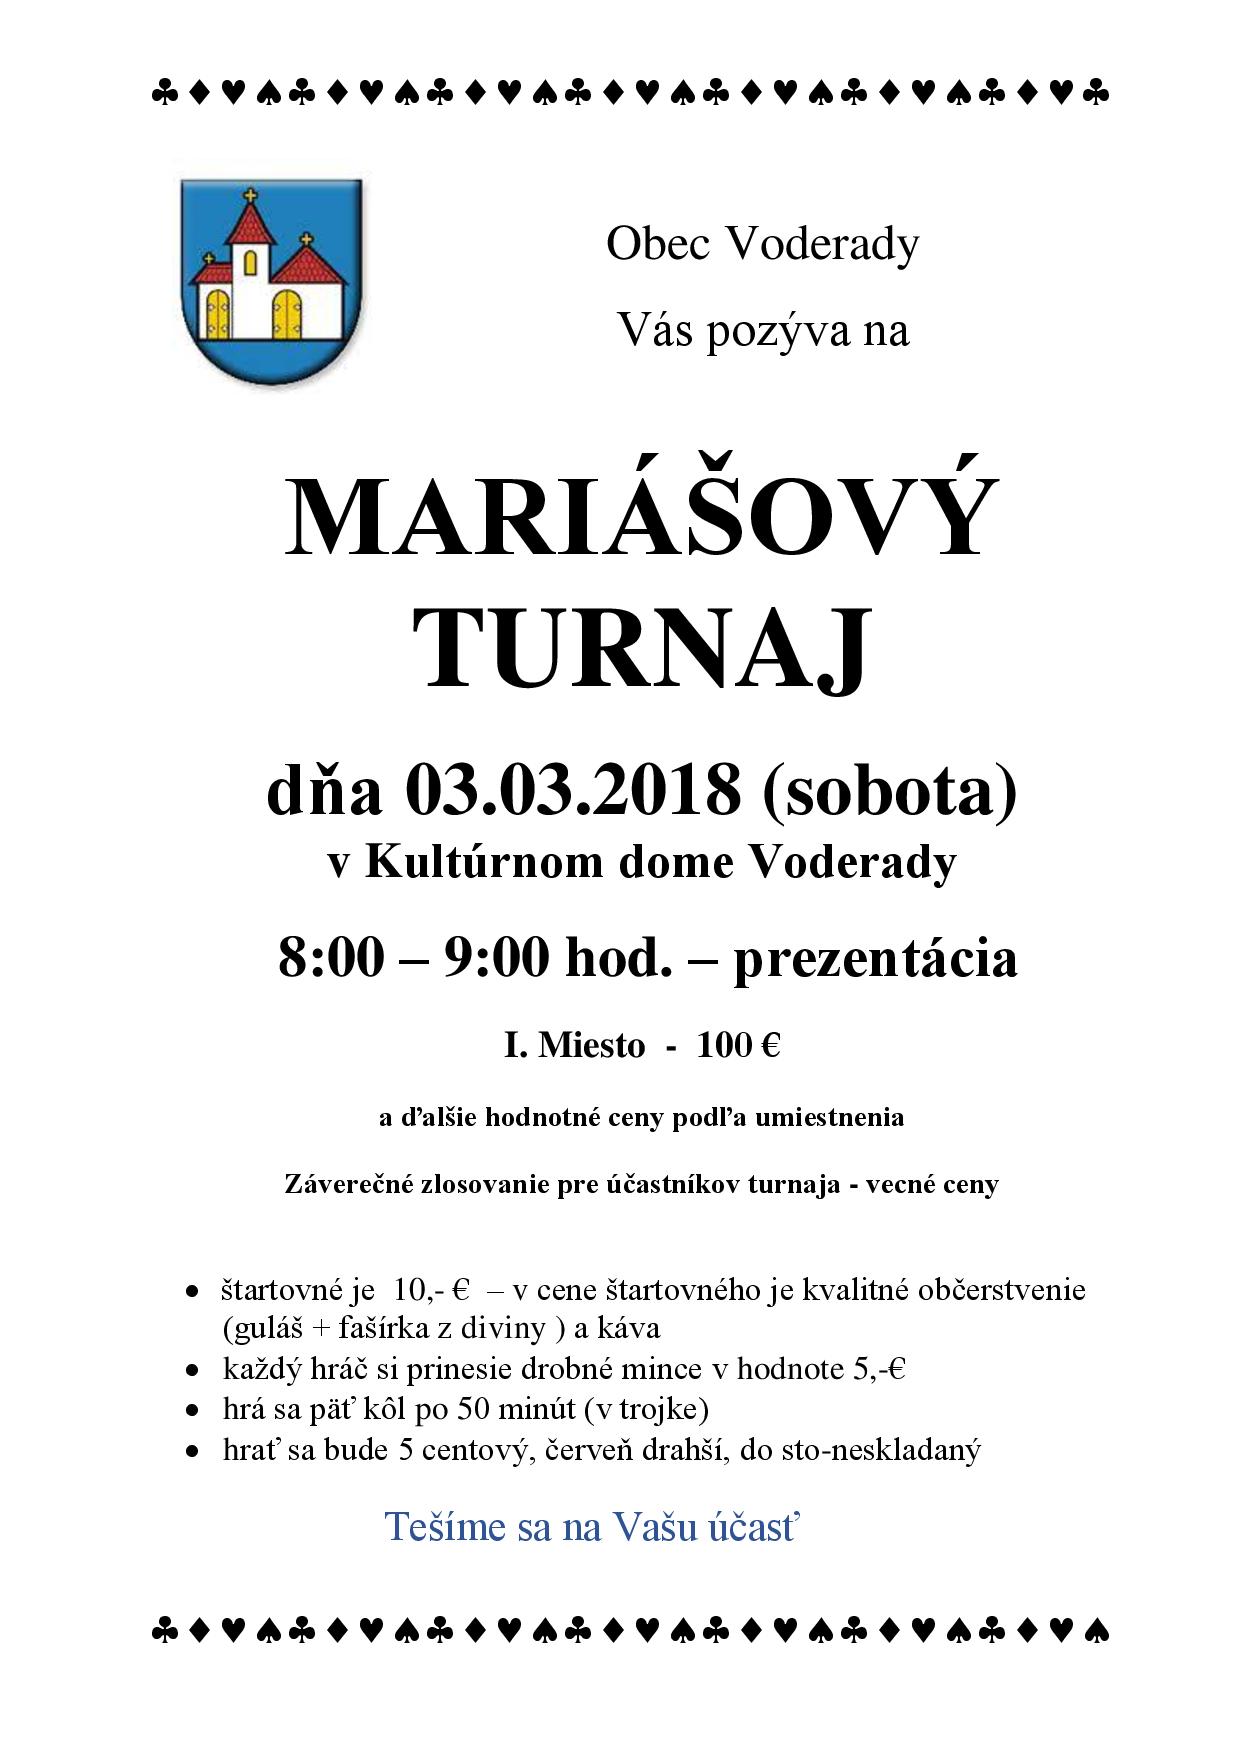 Mariášový turnaj Voderady 2018